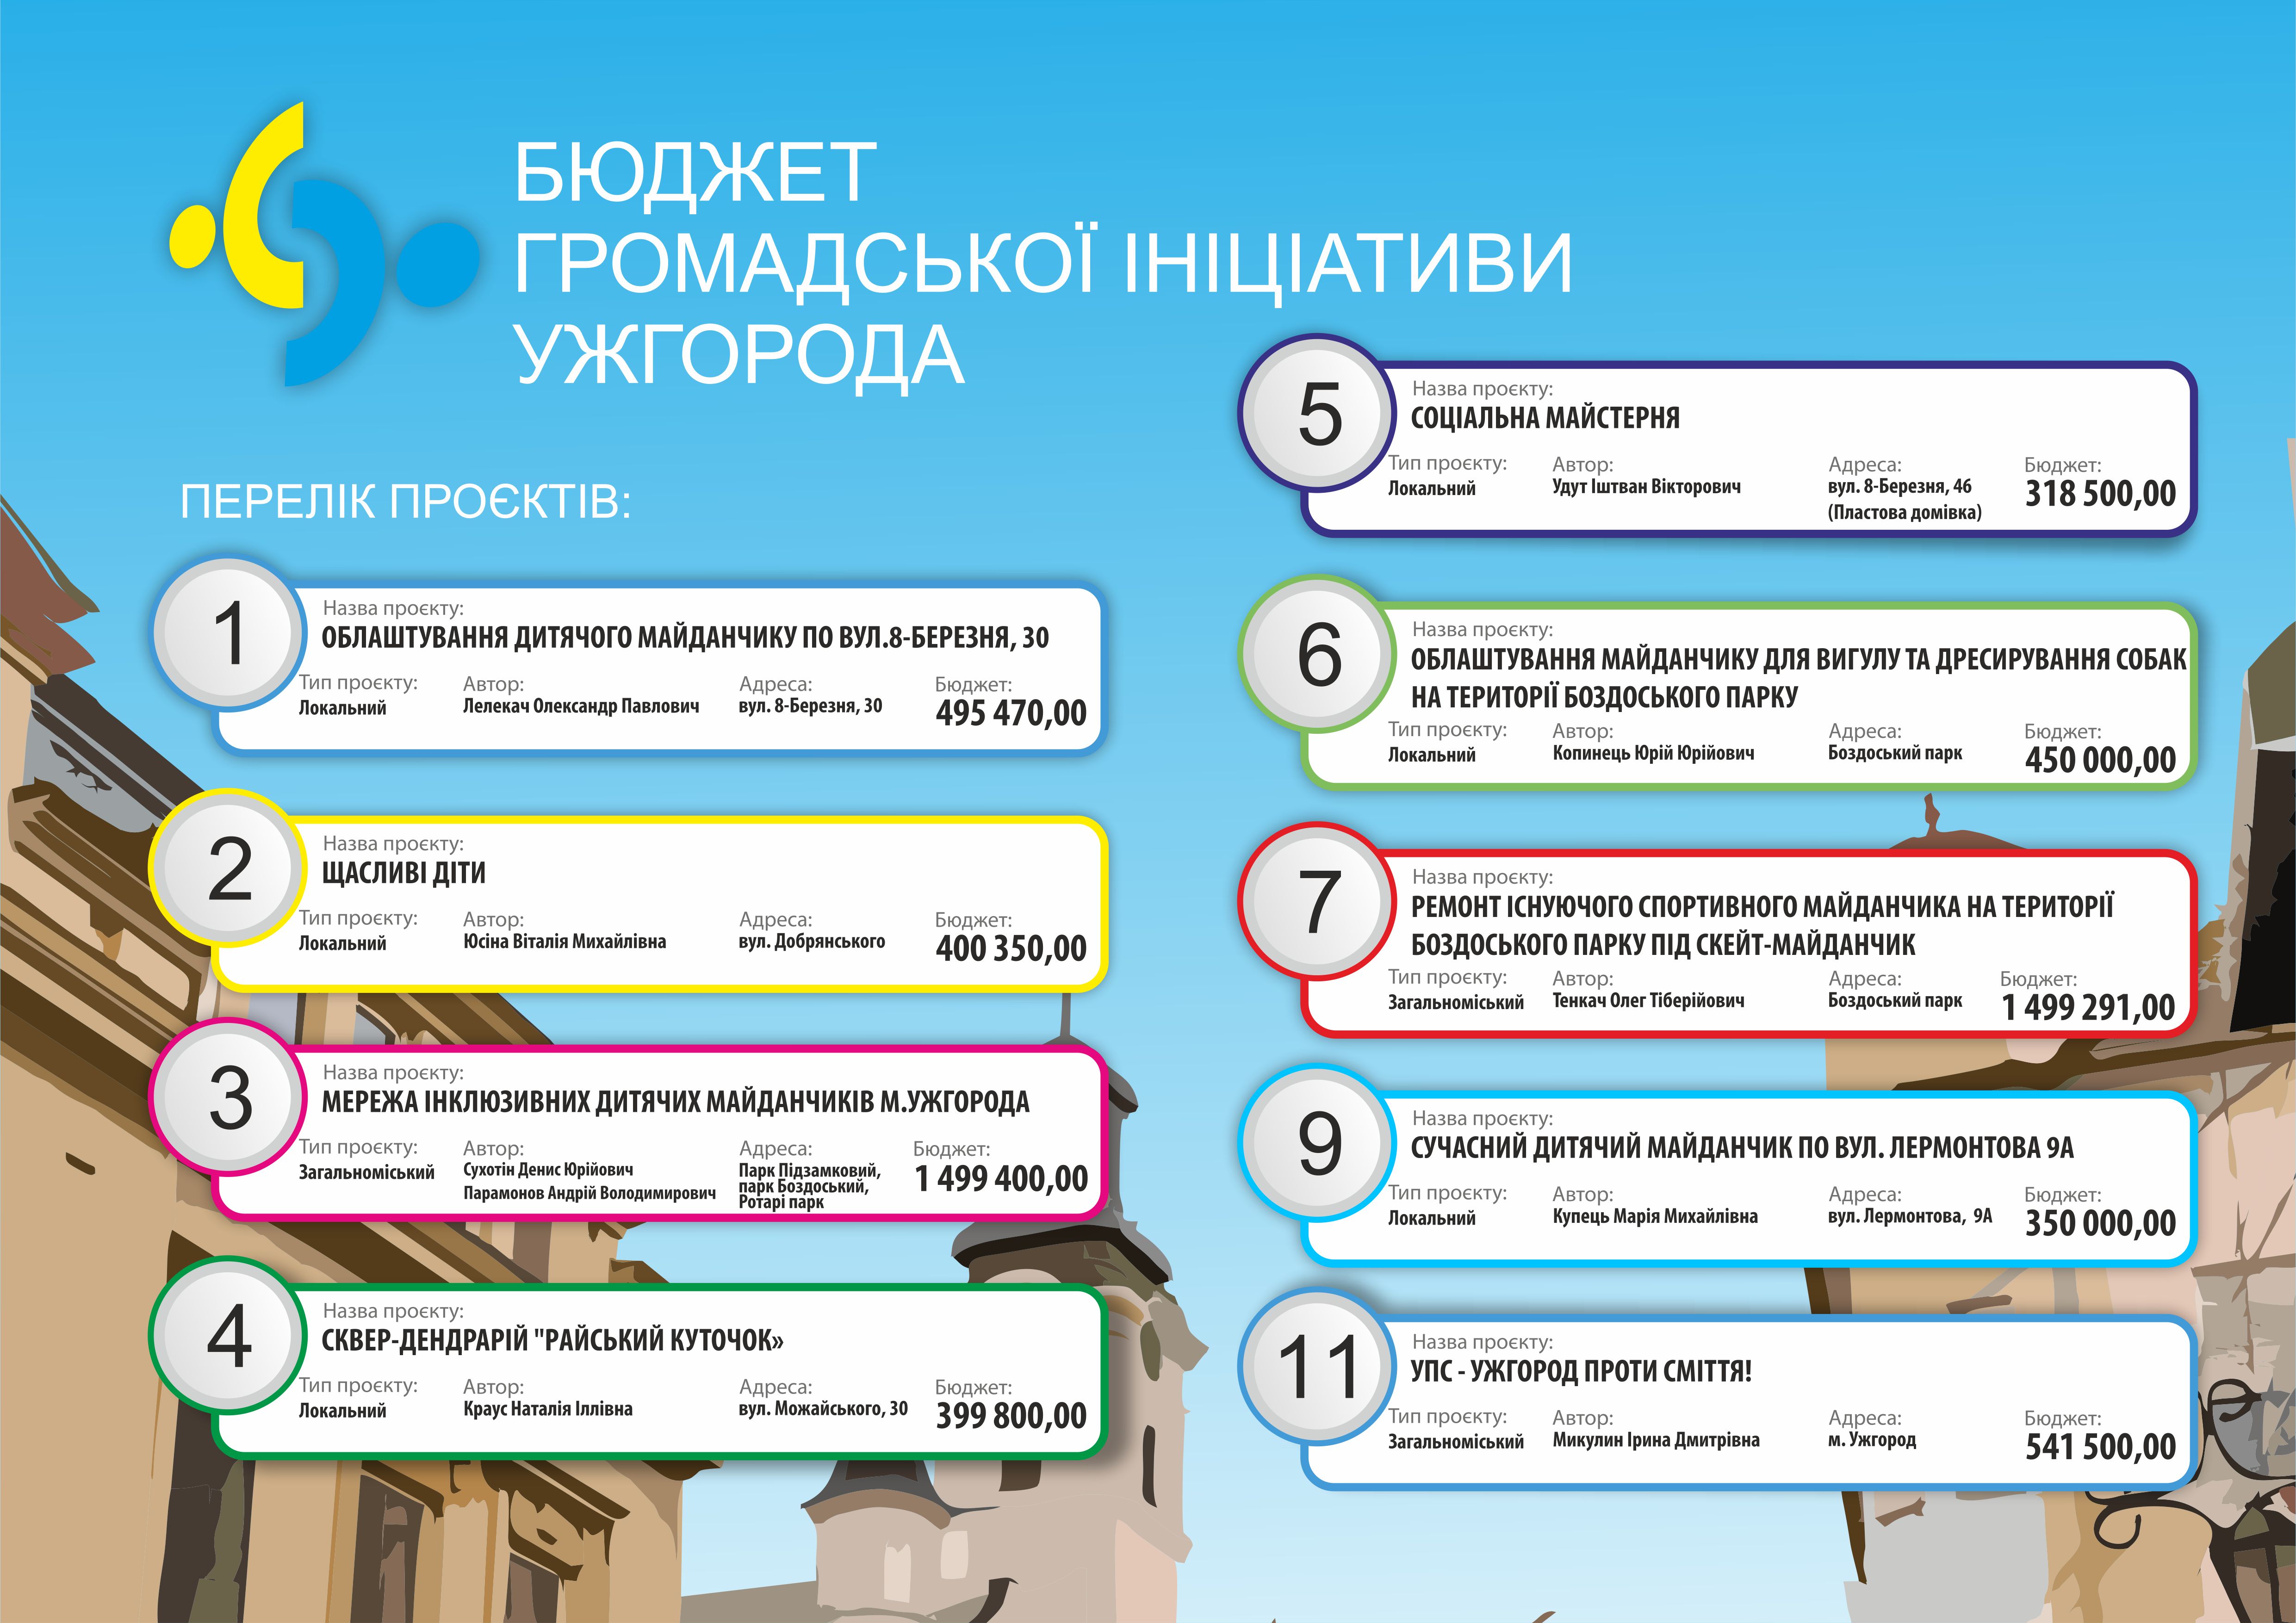 Із 4 листопада стартує голосування за проєкти бюджету громадської ініціативи Ужгорода 